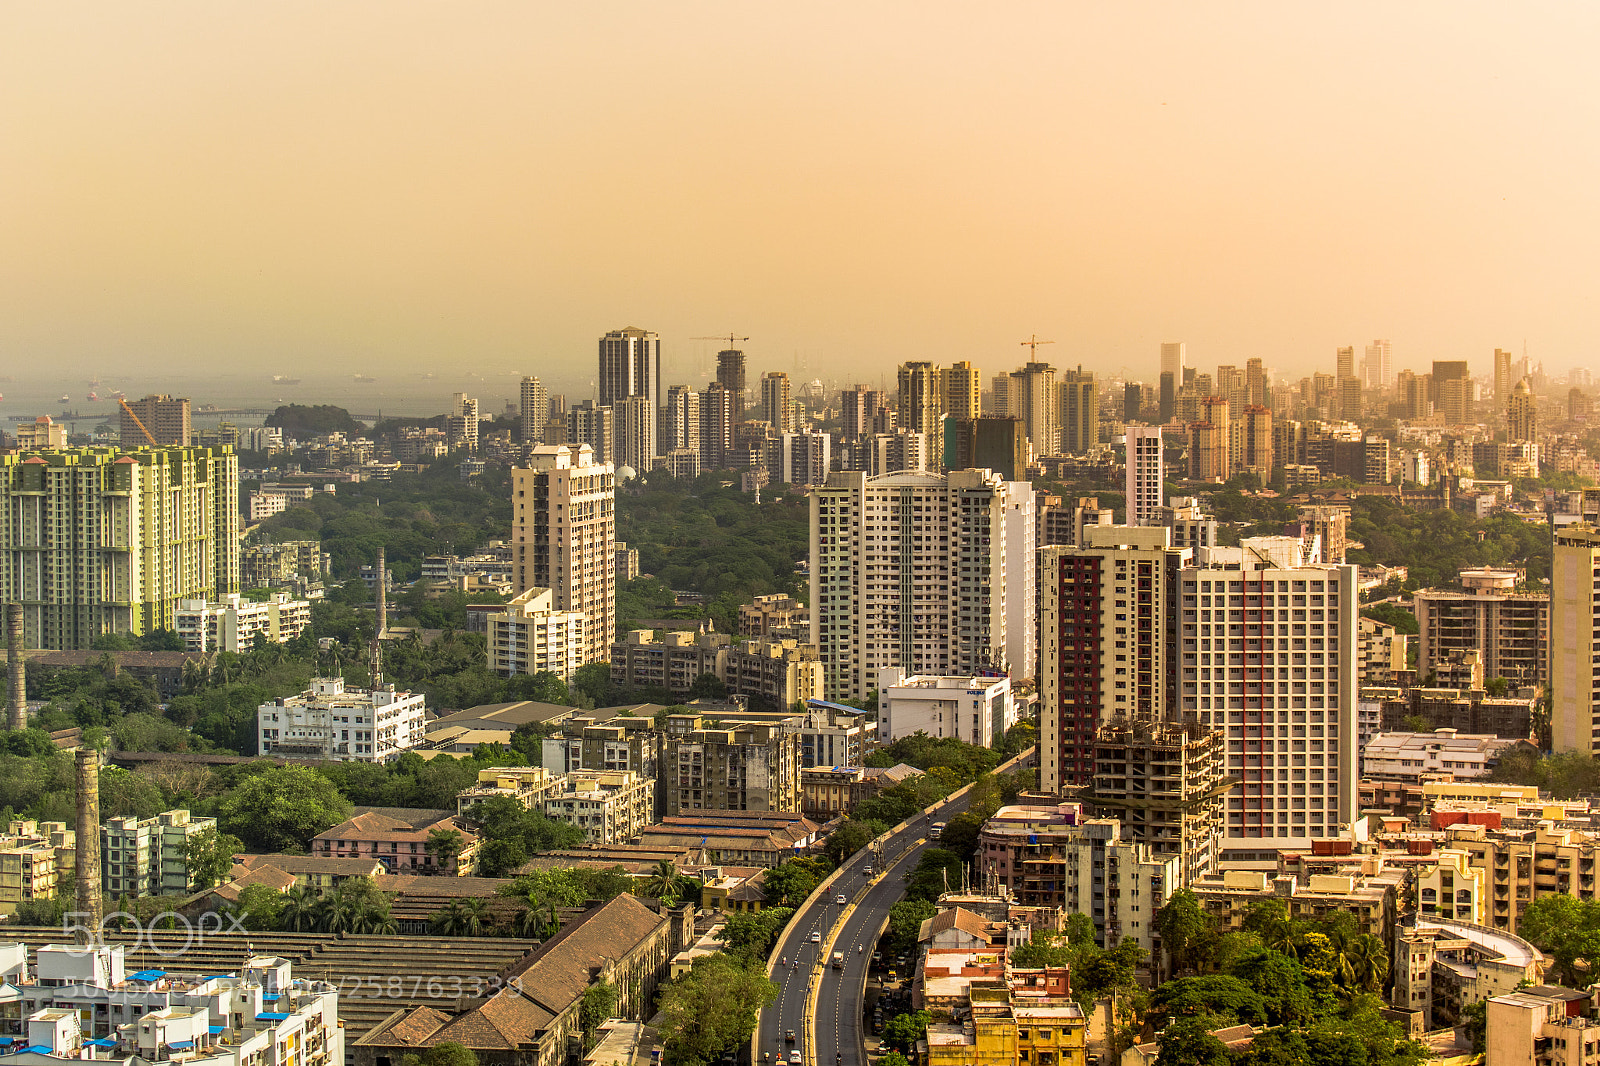 Nikon D5600 sample photo. 005 cityscapes from mumbai photography